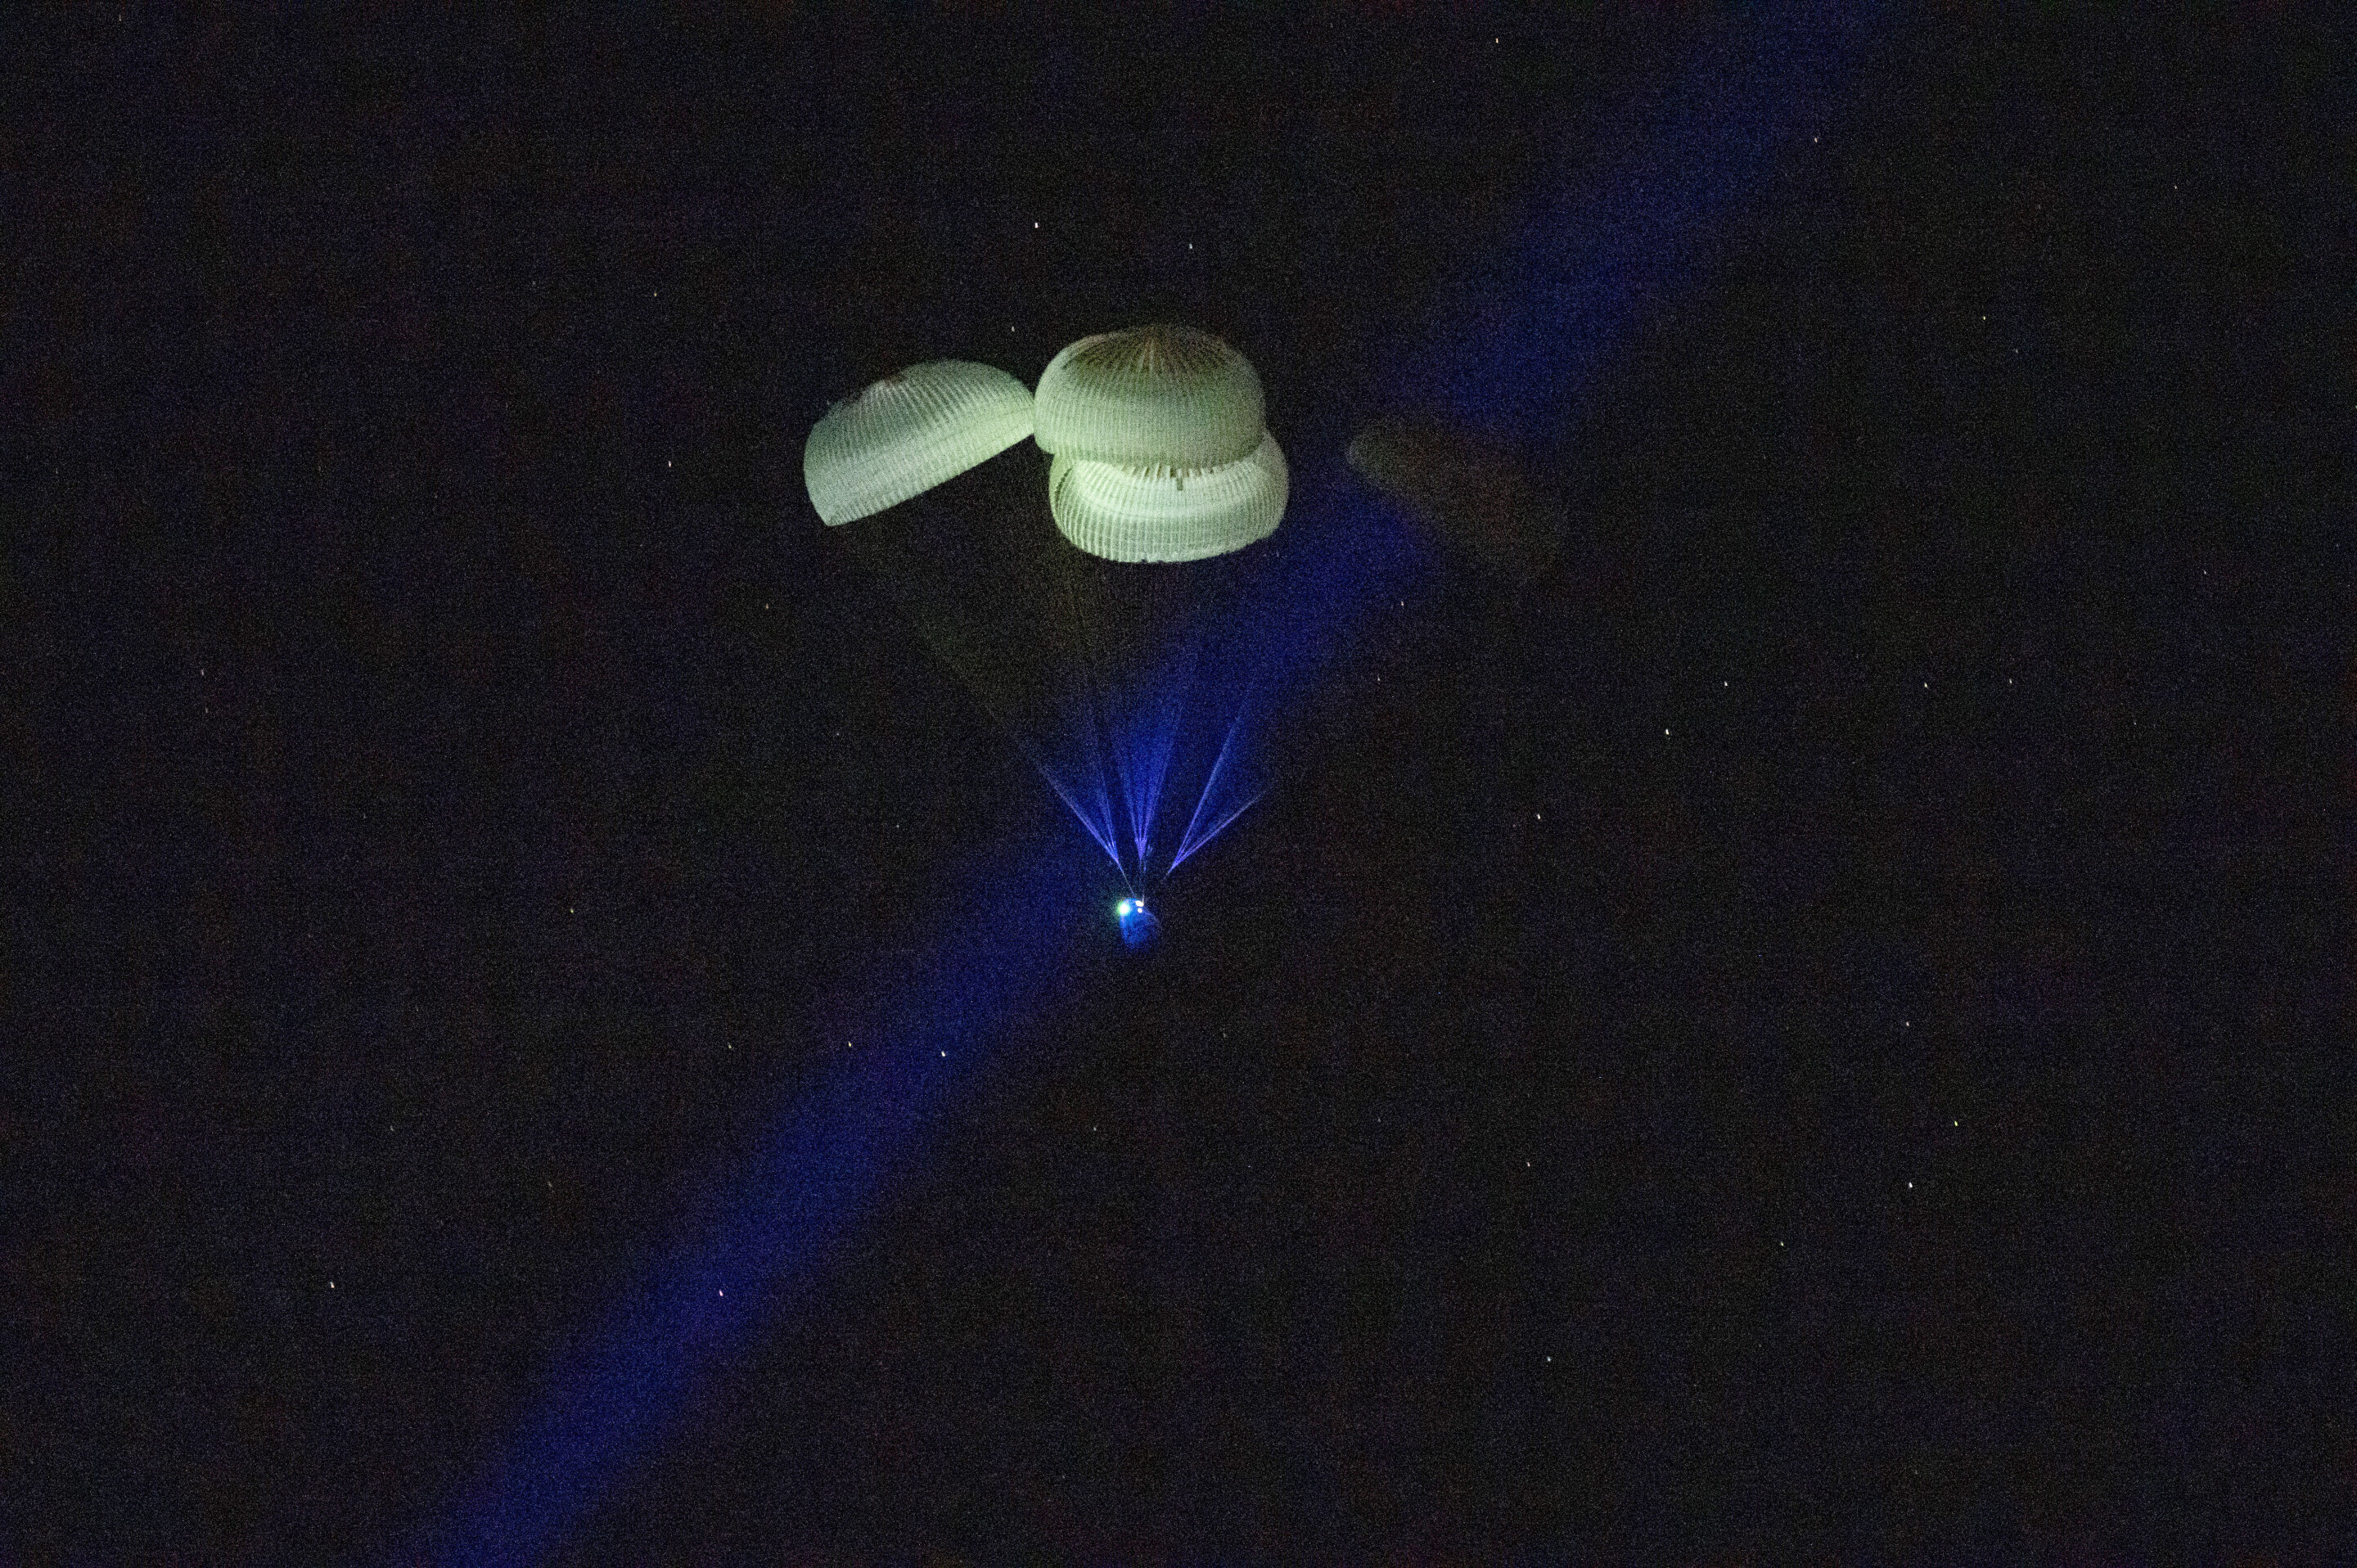 La cápsula de la nave espacial SpaceX Dragon Endurance, frenada por paracaídas, se acerca a la superficie de las aguas del Golfo de México frente a Tampa, Florida, mientras regresa a la Tierra con los ingenieros de vuelo de la Expedición 68 Anna Kikina de Roscosmos, Josh Cassada y Nicole Mann de la NASA, y Koichi Wakata de JAXA (Agencia de Exploración Aeroespacial de Japón) tras una misión de cinco meses en la Estación Espacial Internacional, el sábado 11 de marzo de 2023. Crédito: Keegan Barber/NASA vía AP